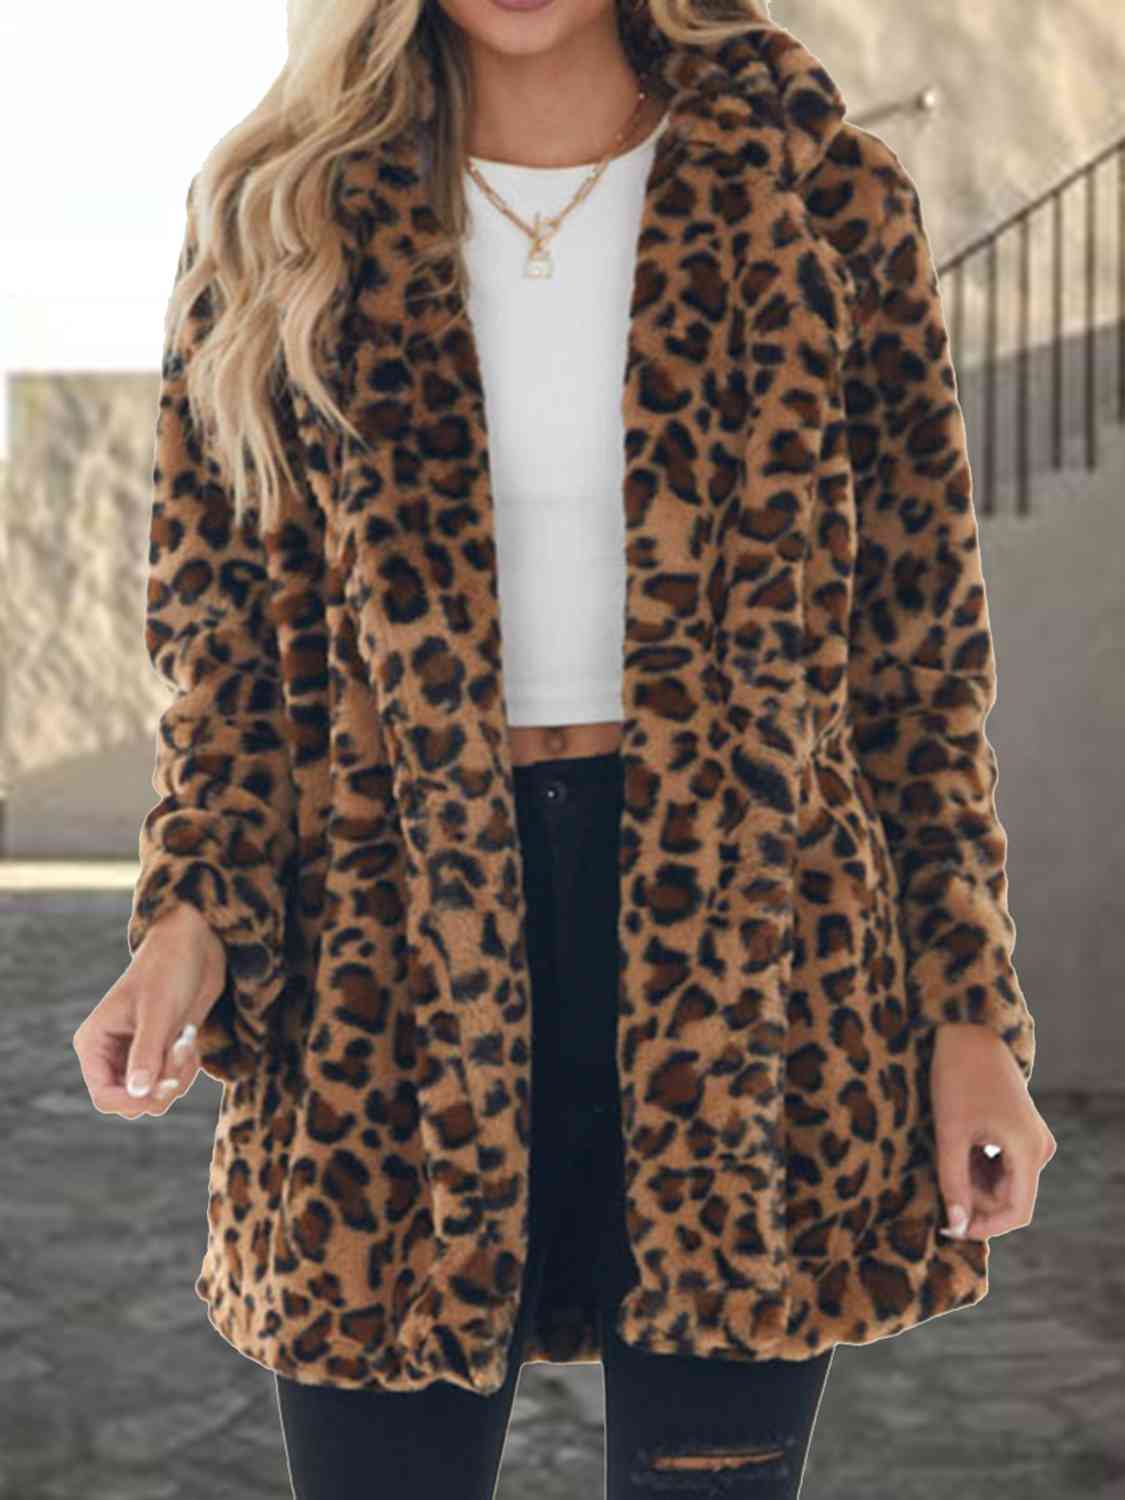 Janie's Stylish Leopard Coat